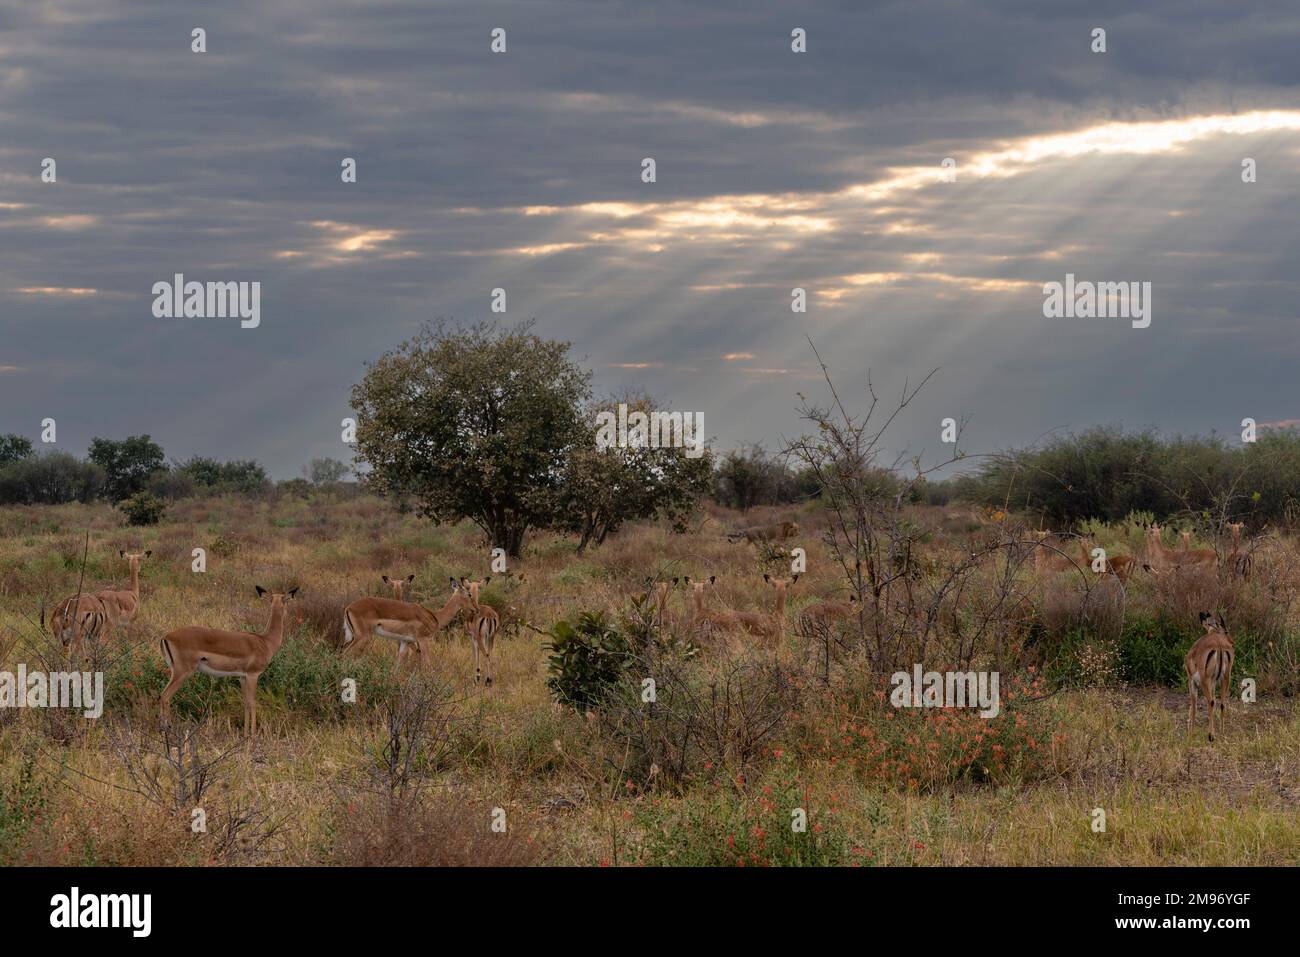 Un gruppo di impala (Aepyceros melampus) che guarda un leone maschio (Panthera leo) che cammina nel cespuglio, Savuti, Parco Nazionale di Chobe, Botswana. Foto Stock